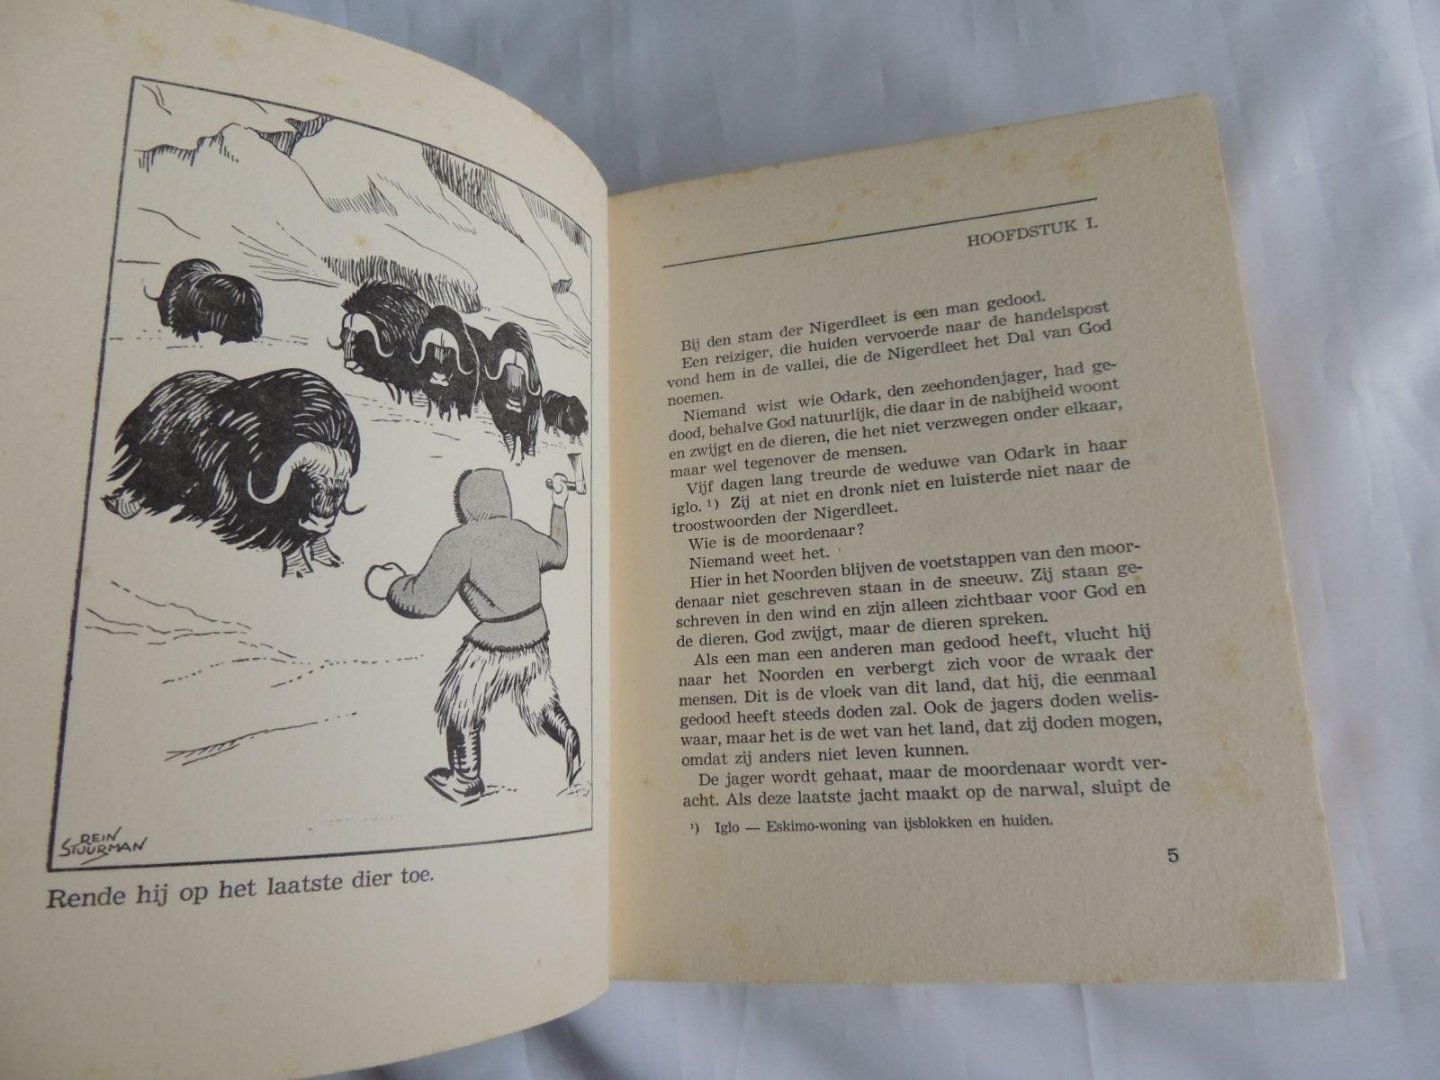 Steylen, Herman - Illustr.+ bandtekening Rein Stuurman - In het witte land : een oorspronkelijk romantisch jeugdverhaal van Eskimo`s en rendieren in het hoge noorden